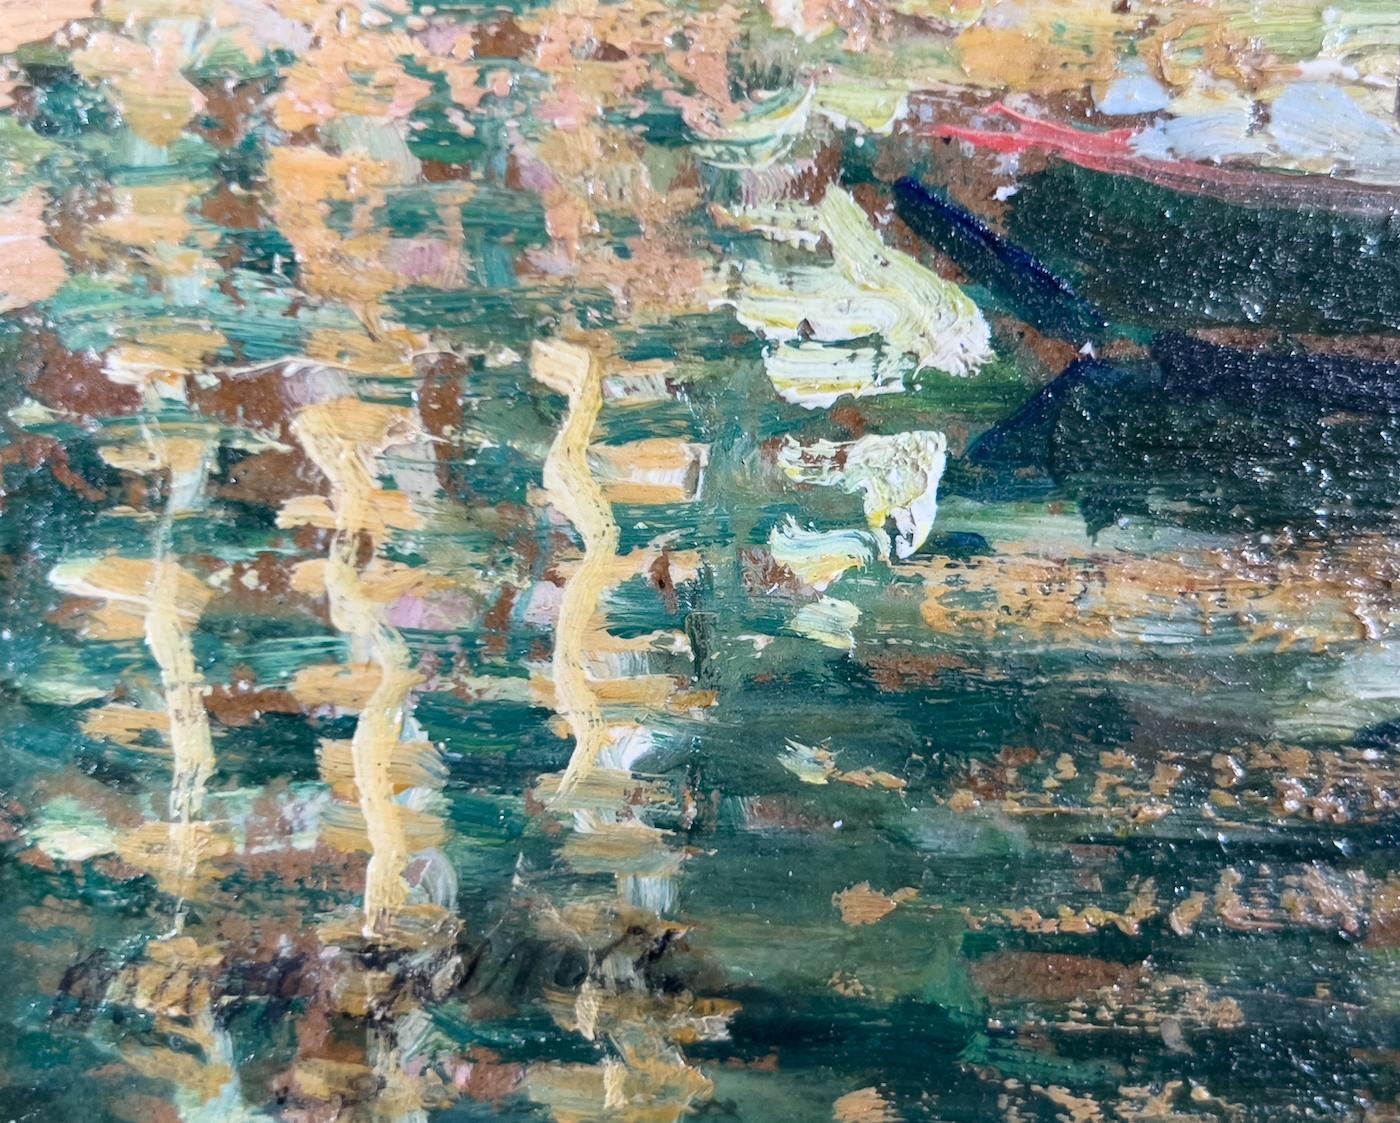 *KÄUFER AUS DEM VEREINIGTEN KÖNIGREICH ZAHLEN EINEN ZUSÄTZLICHEN EINFUHRZOLL VON 5 % AUF DEN OBEN GENANNTEN PREIS.

Les Bateaux Lavoir, Paris von Georges Manzana Pissarro (1871-1961)
Öl auf Leinwand
38 x 46 cm (15 x 18 ¹/₈ Zoll)
Signiert unten